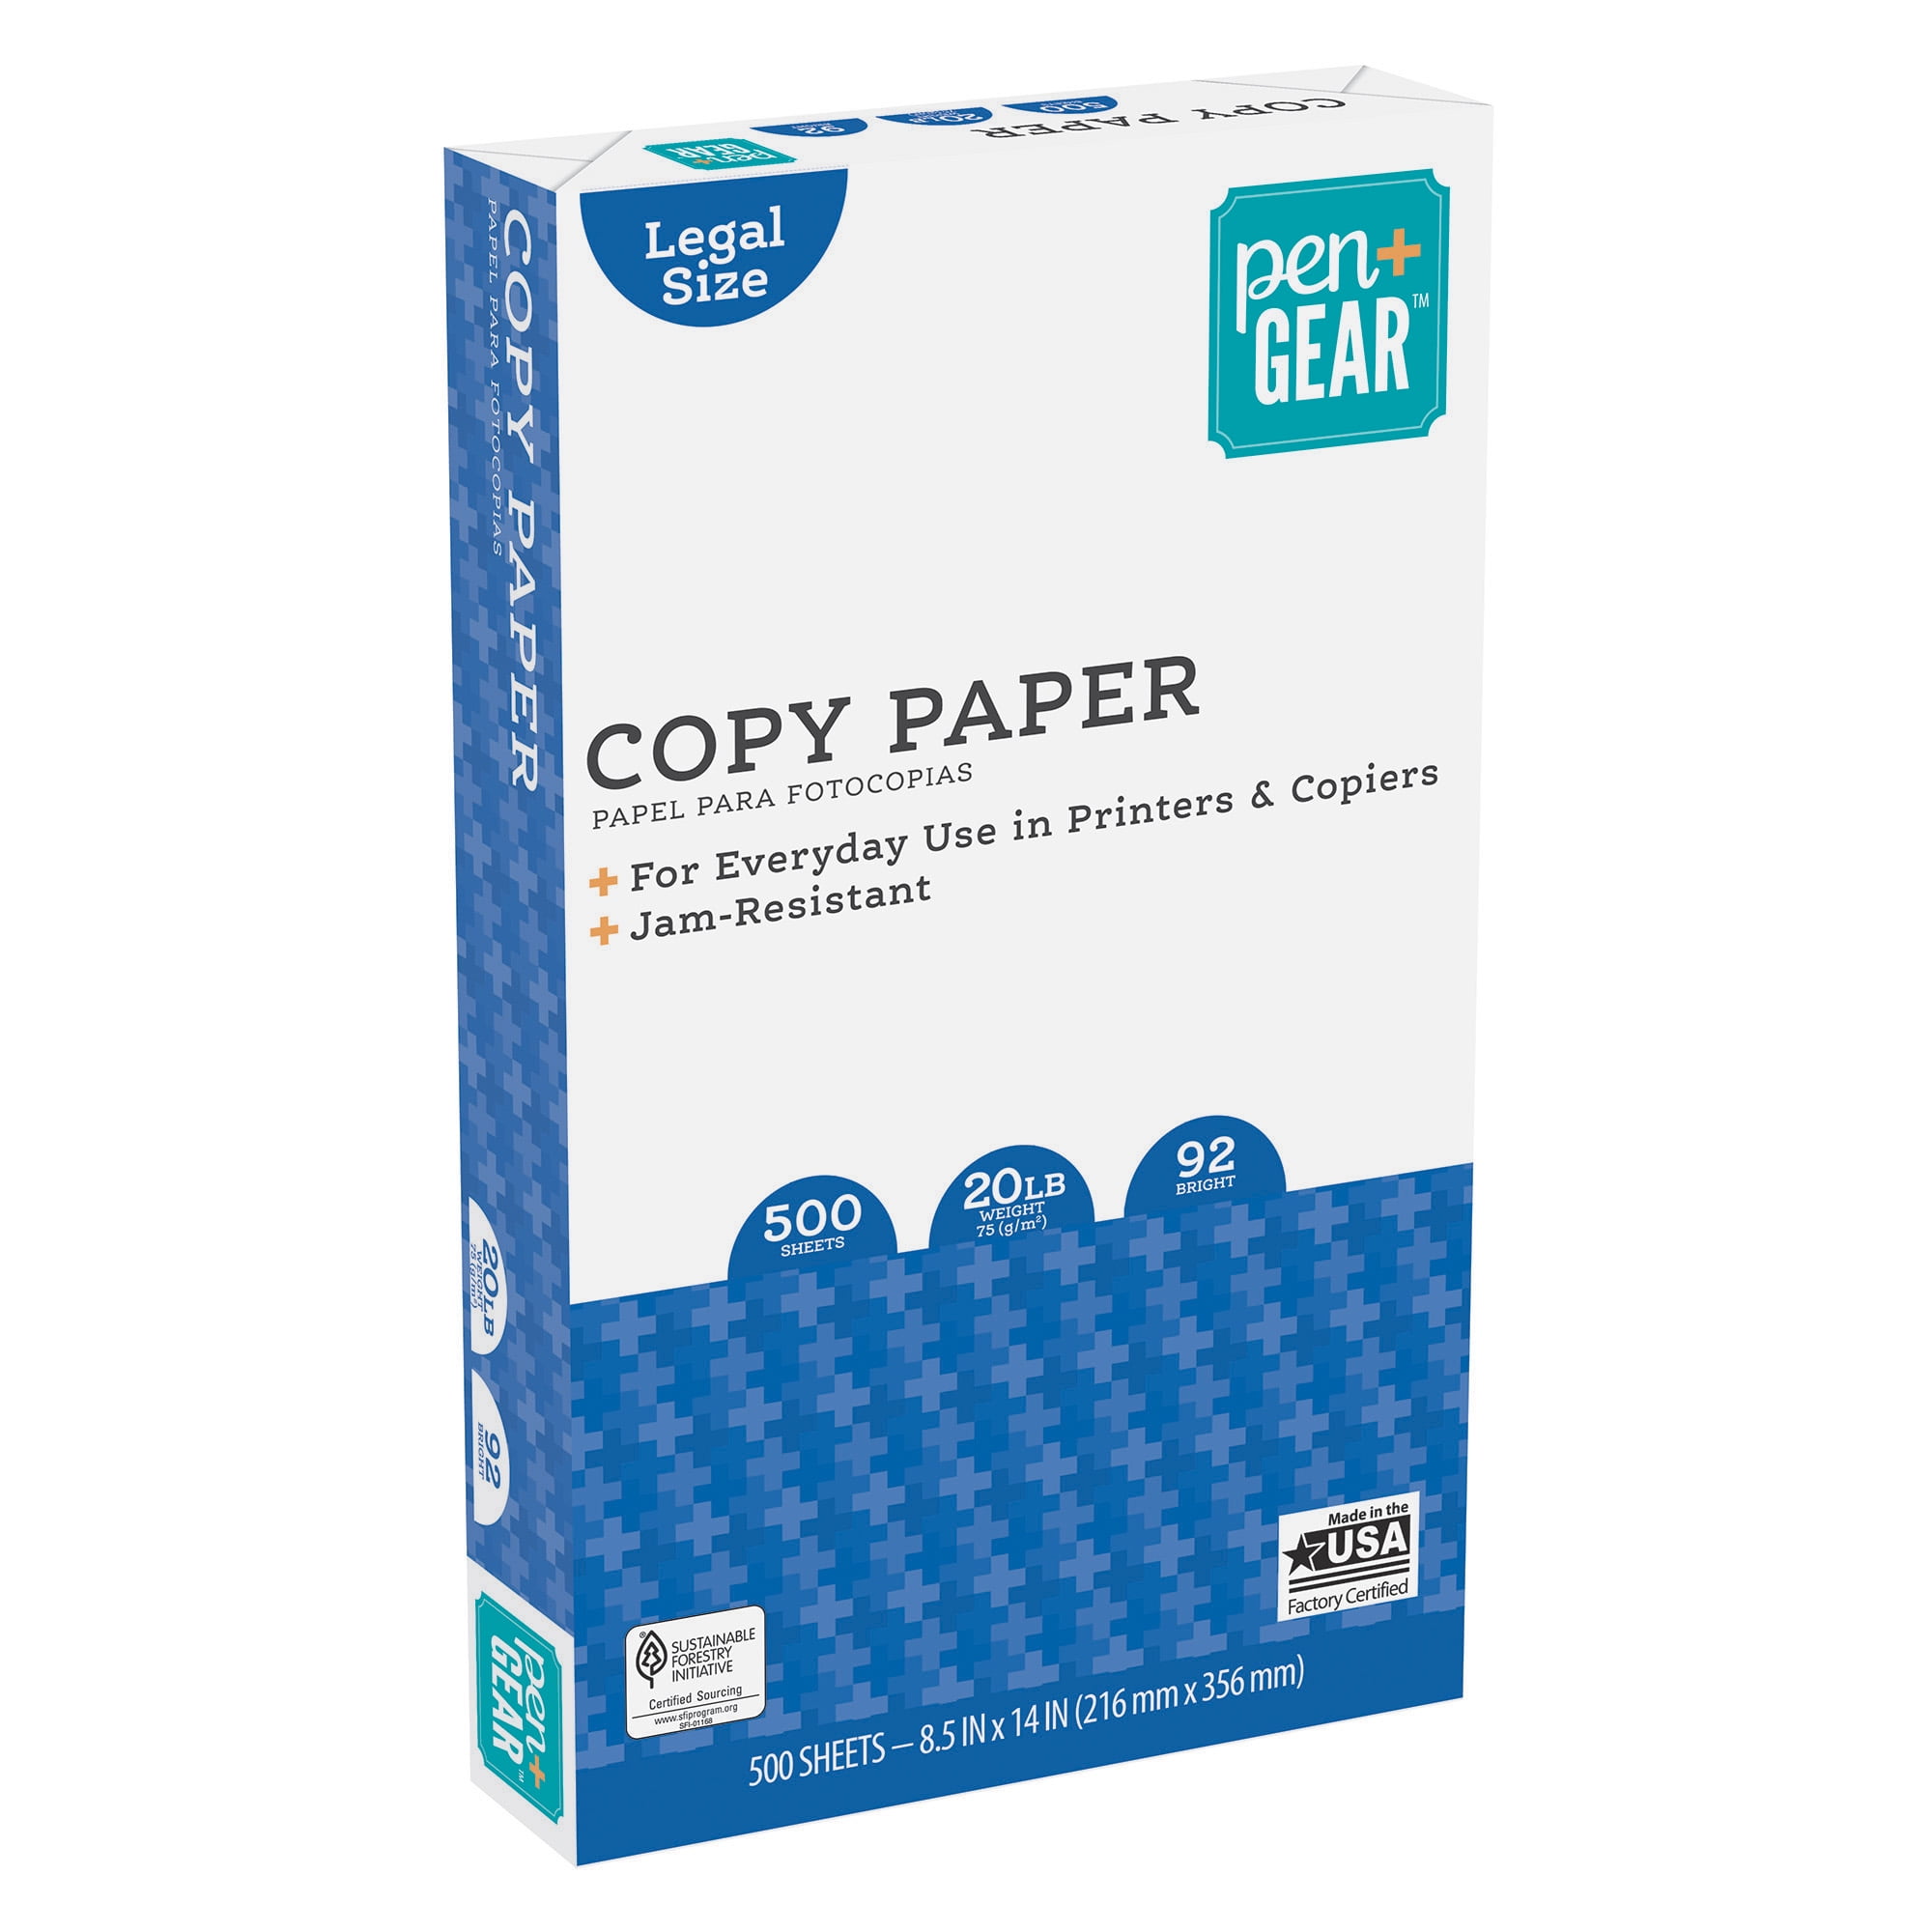 Pen+gear Copy Paper, 8.5 inch x 14 inch, 92 Bright, White, 20 lb., 1 Ream (500 Sheets)